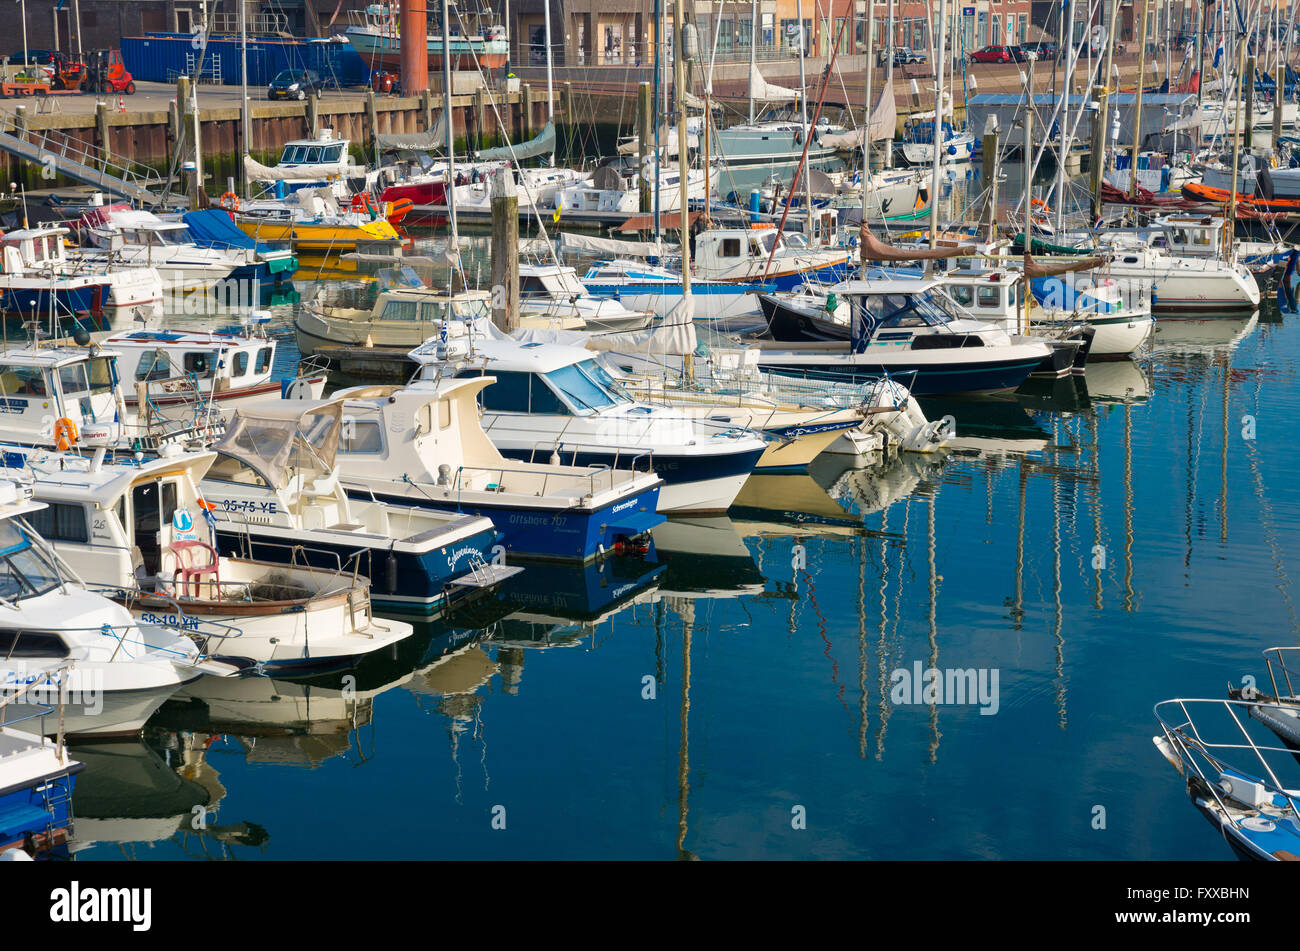 SCHEVENINGEN, NETHERLANDS - OCTOBER 3, 2015: Yachts in Scheveningen marina on a sunny day Stock Photo